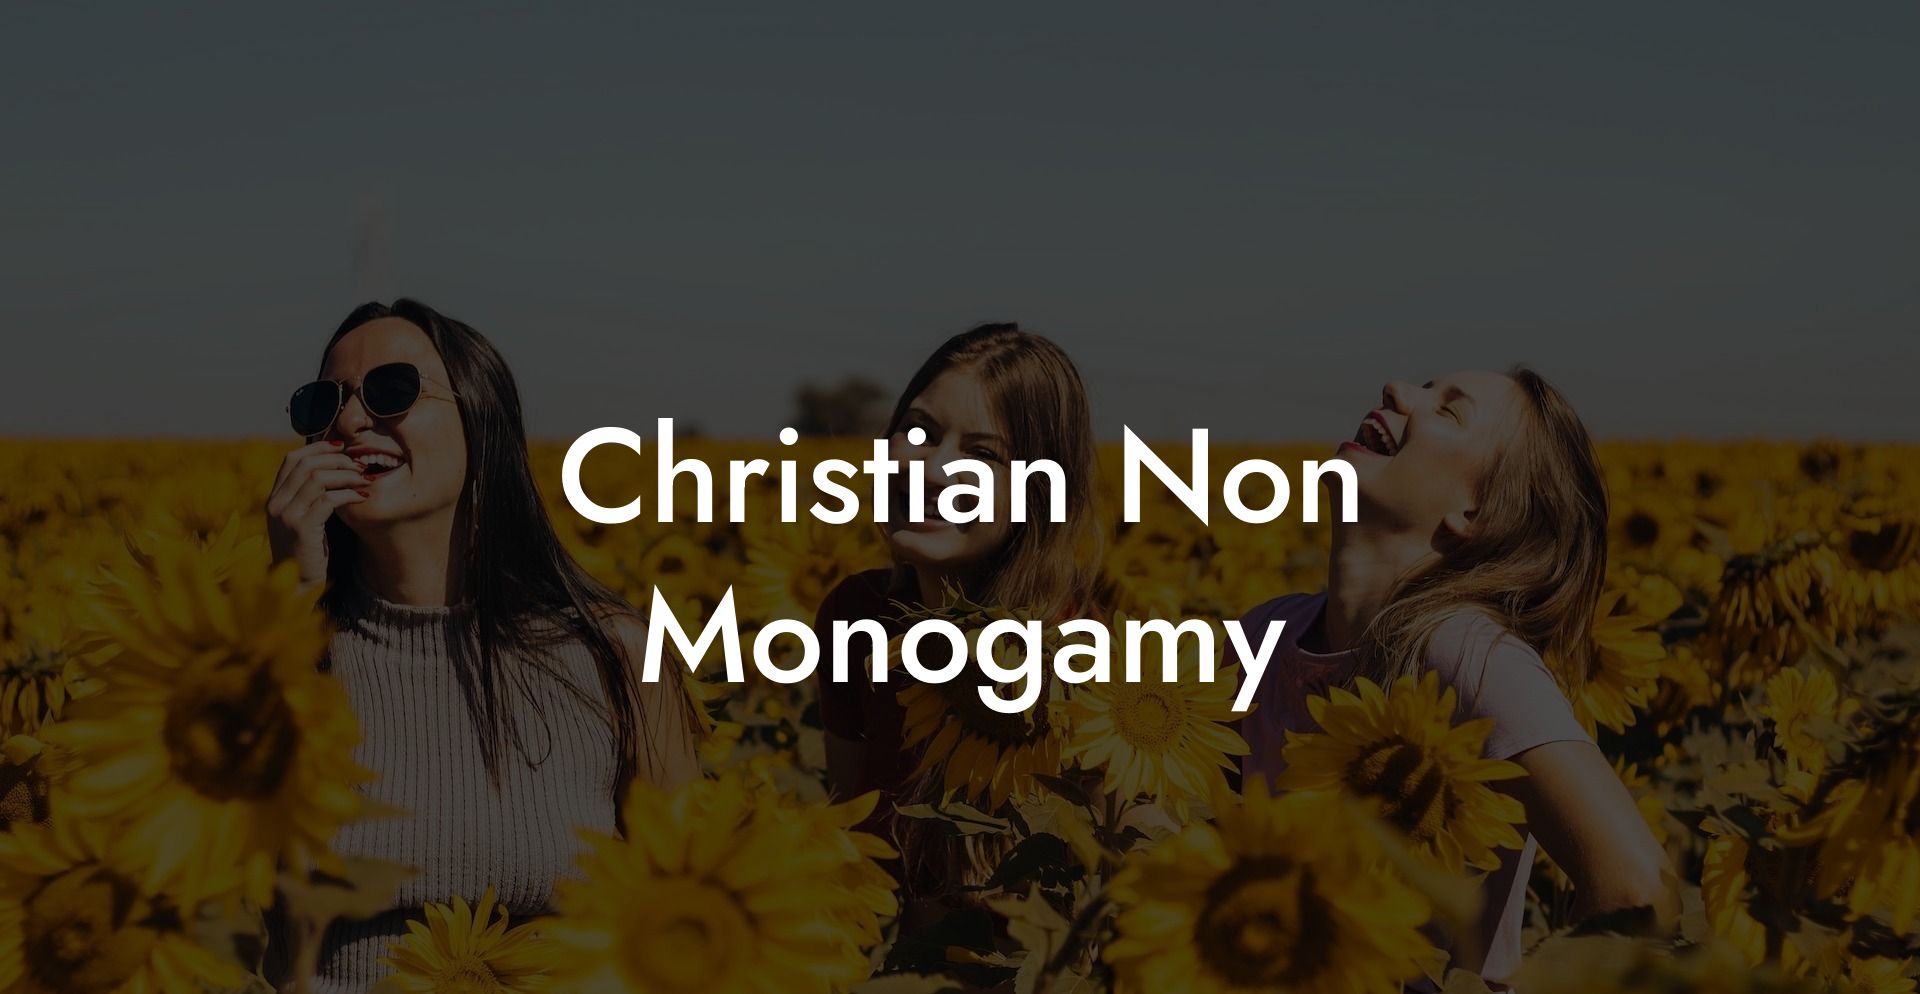 Christian Non Monogamy